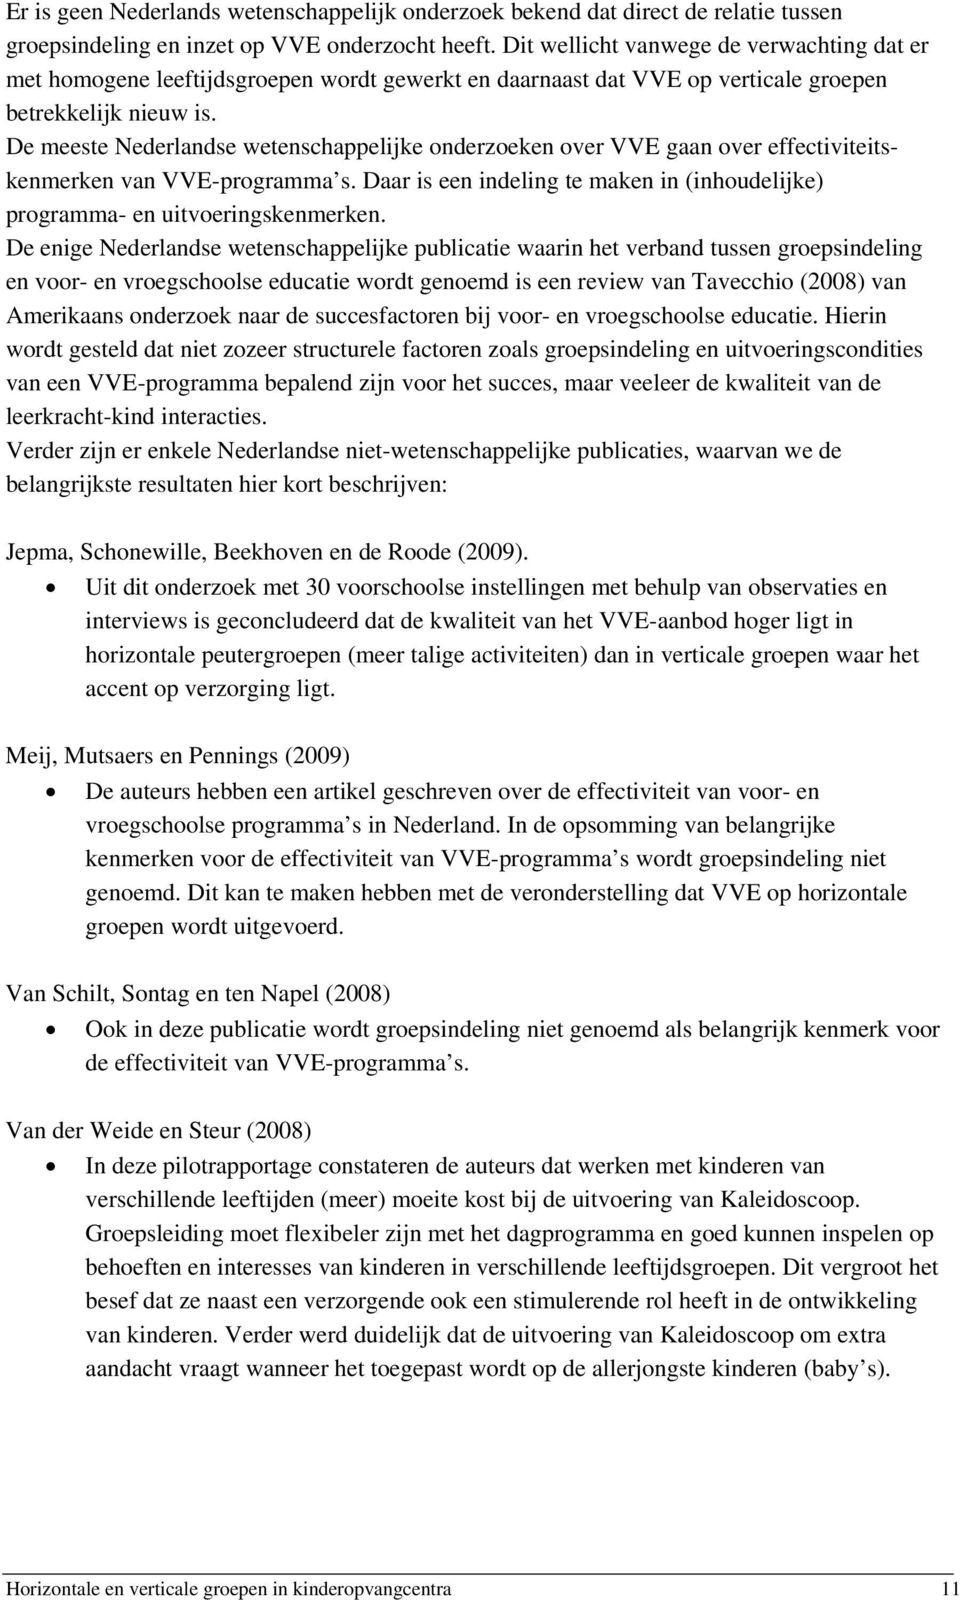 De meeste Nederlandse wetenschappelijke onderzoeken over VVE gaan over effectiviteitskenmerken van VVE-programma s. Daar is een indeling te maken in (inhoudelijke) programma- en uitvoeringskenmerken.